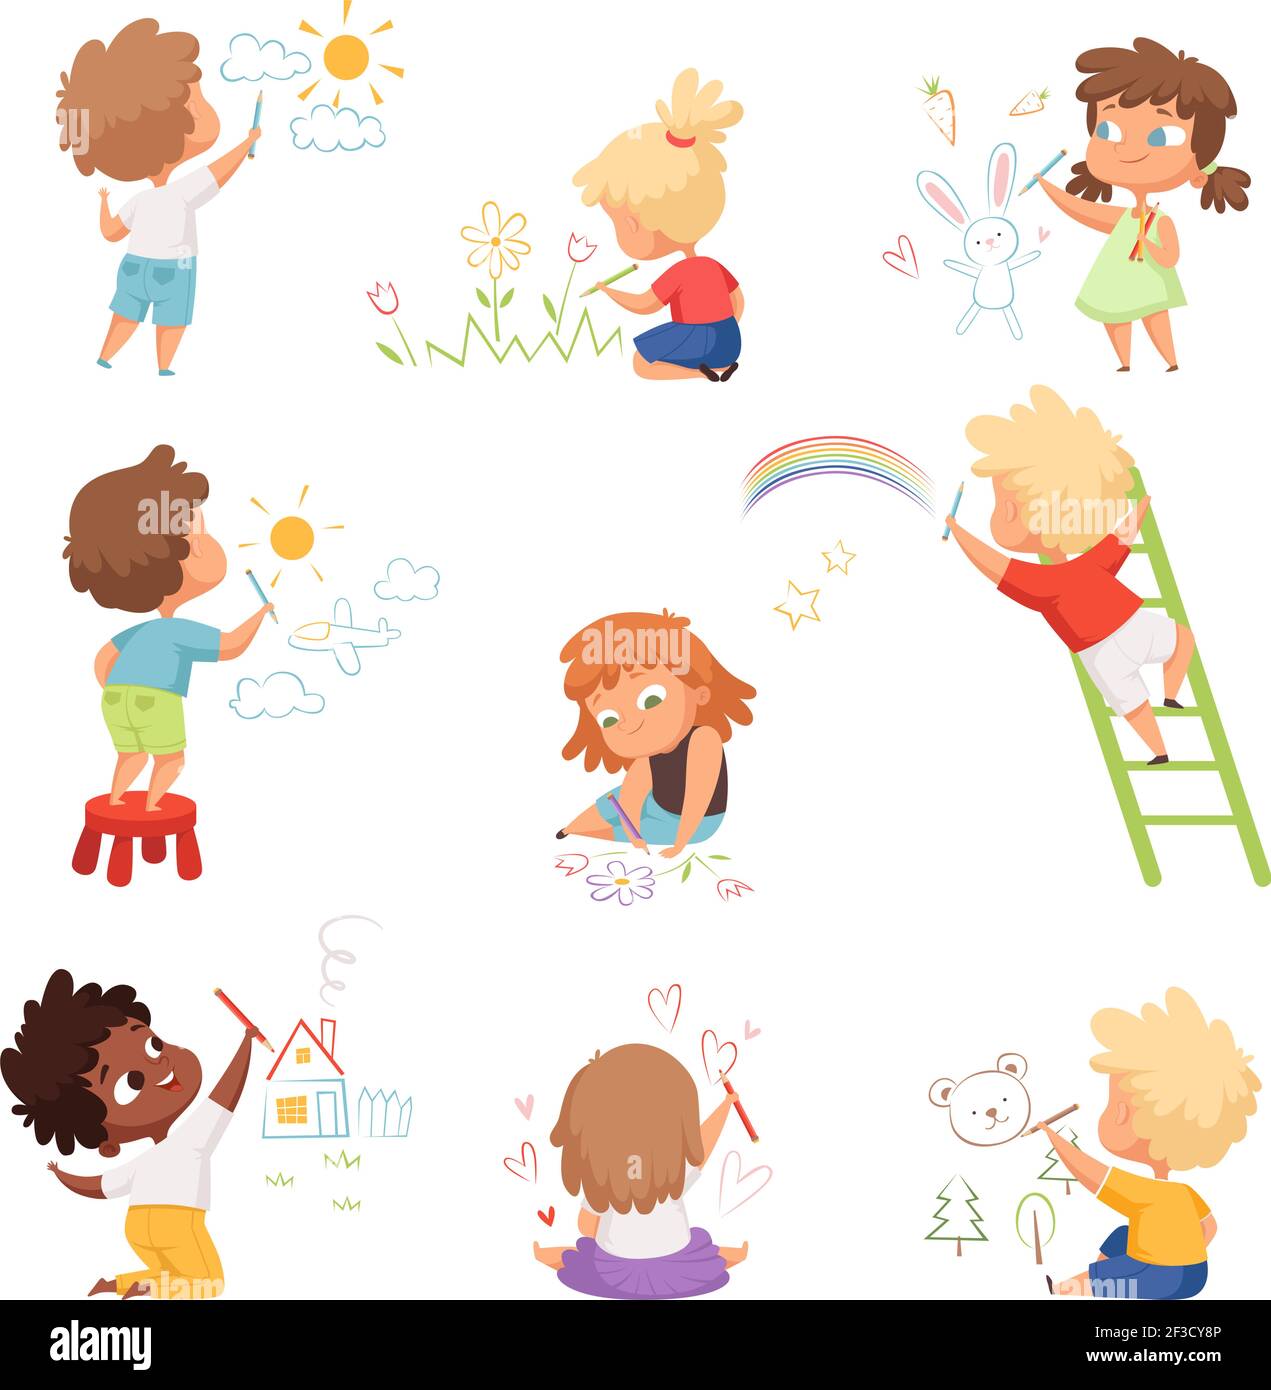 Kinderkünstler. Kinder spielen und malen mit farbigen Buntstifte auf Papier Vektor lustige niedliche Zeichen Stock Vektor